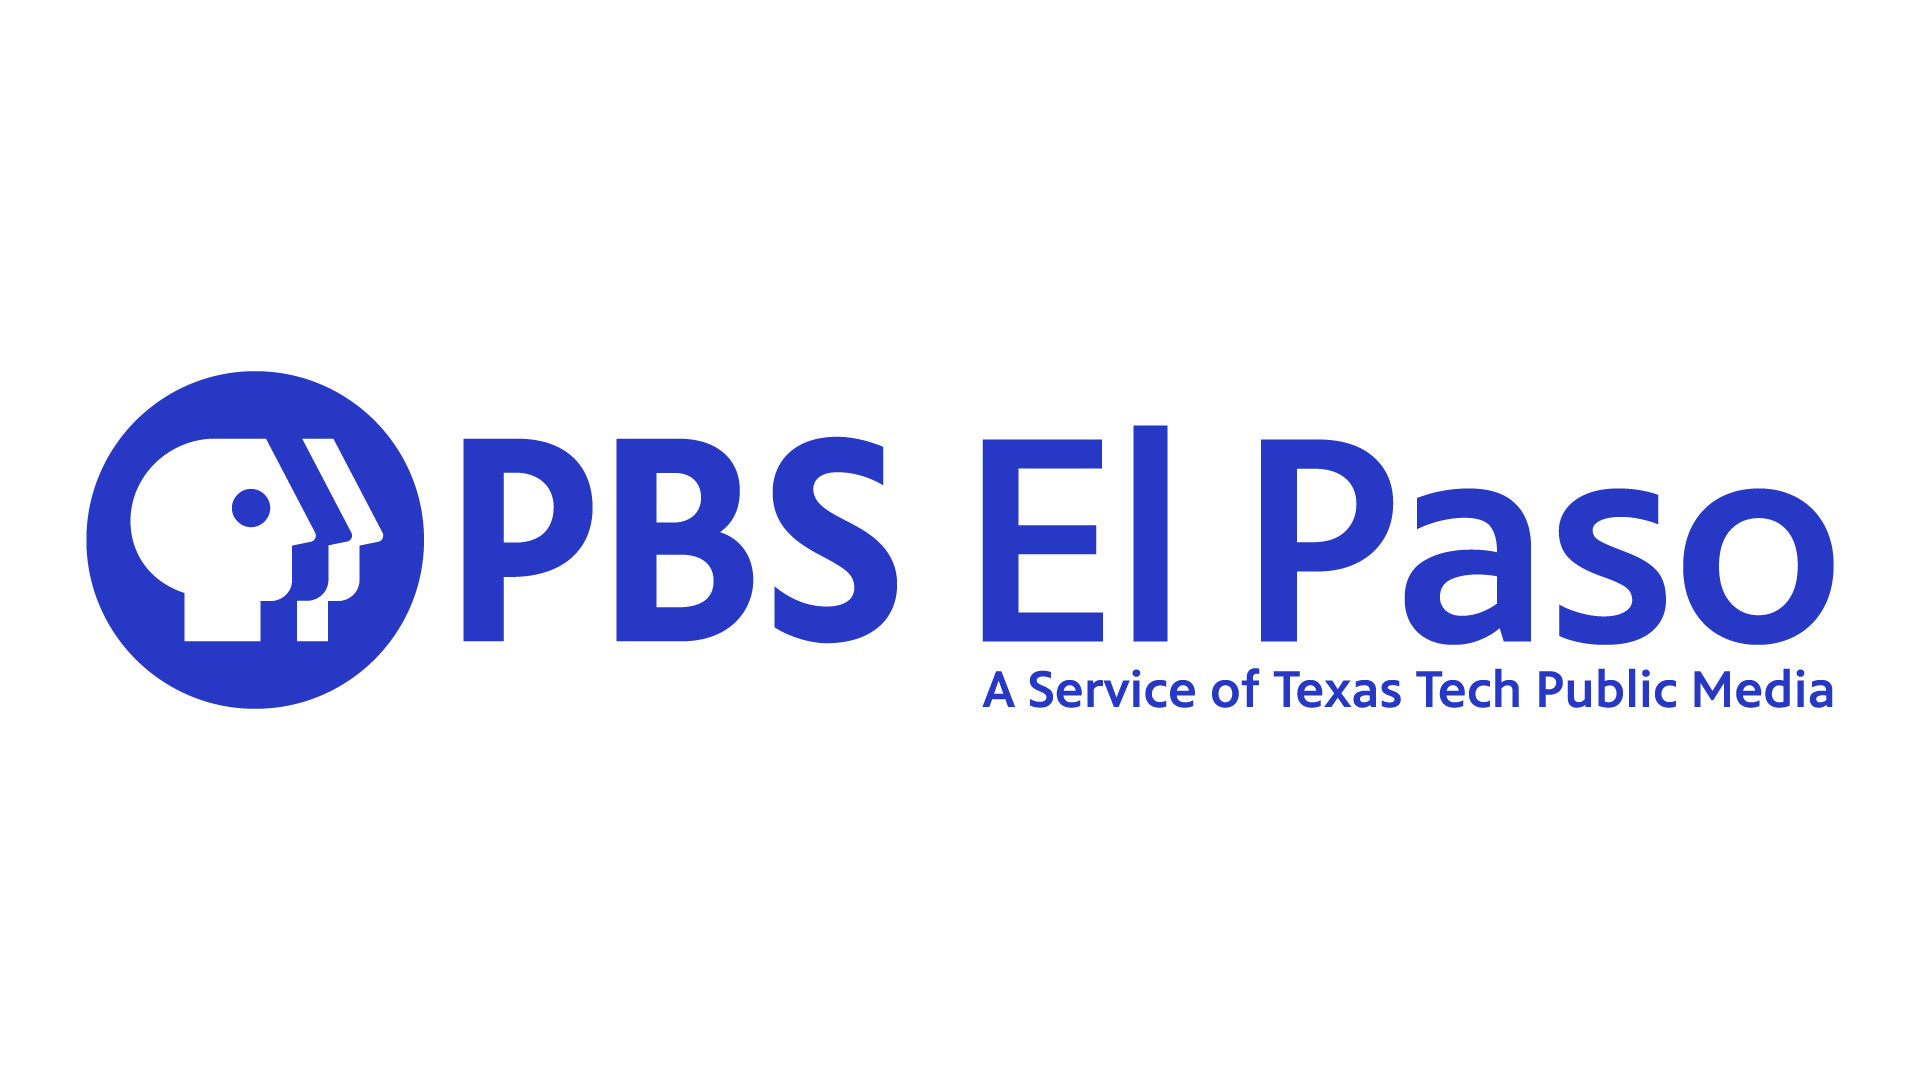 PBS El Paso